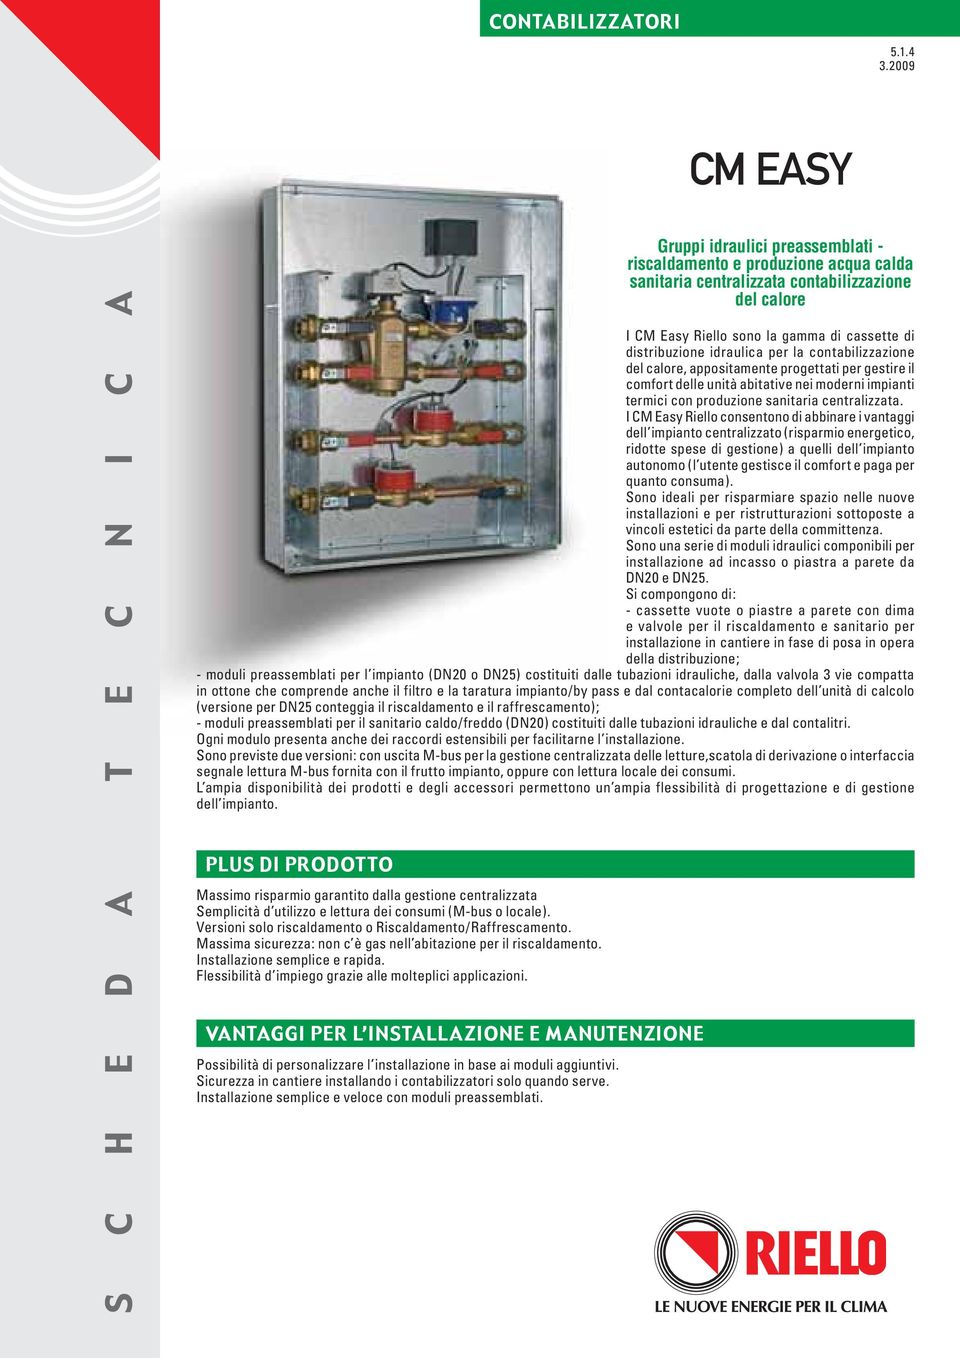 idraulica per la contabilizzazione del calore, appositamente progettati per gestire il comfort delle unità abitative nei moderni impianti termici con produzione sanitaria centralizzata.